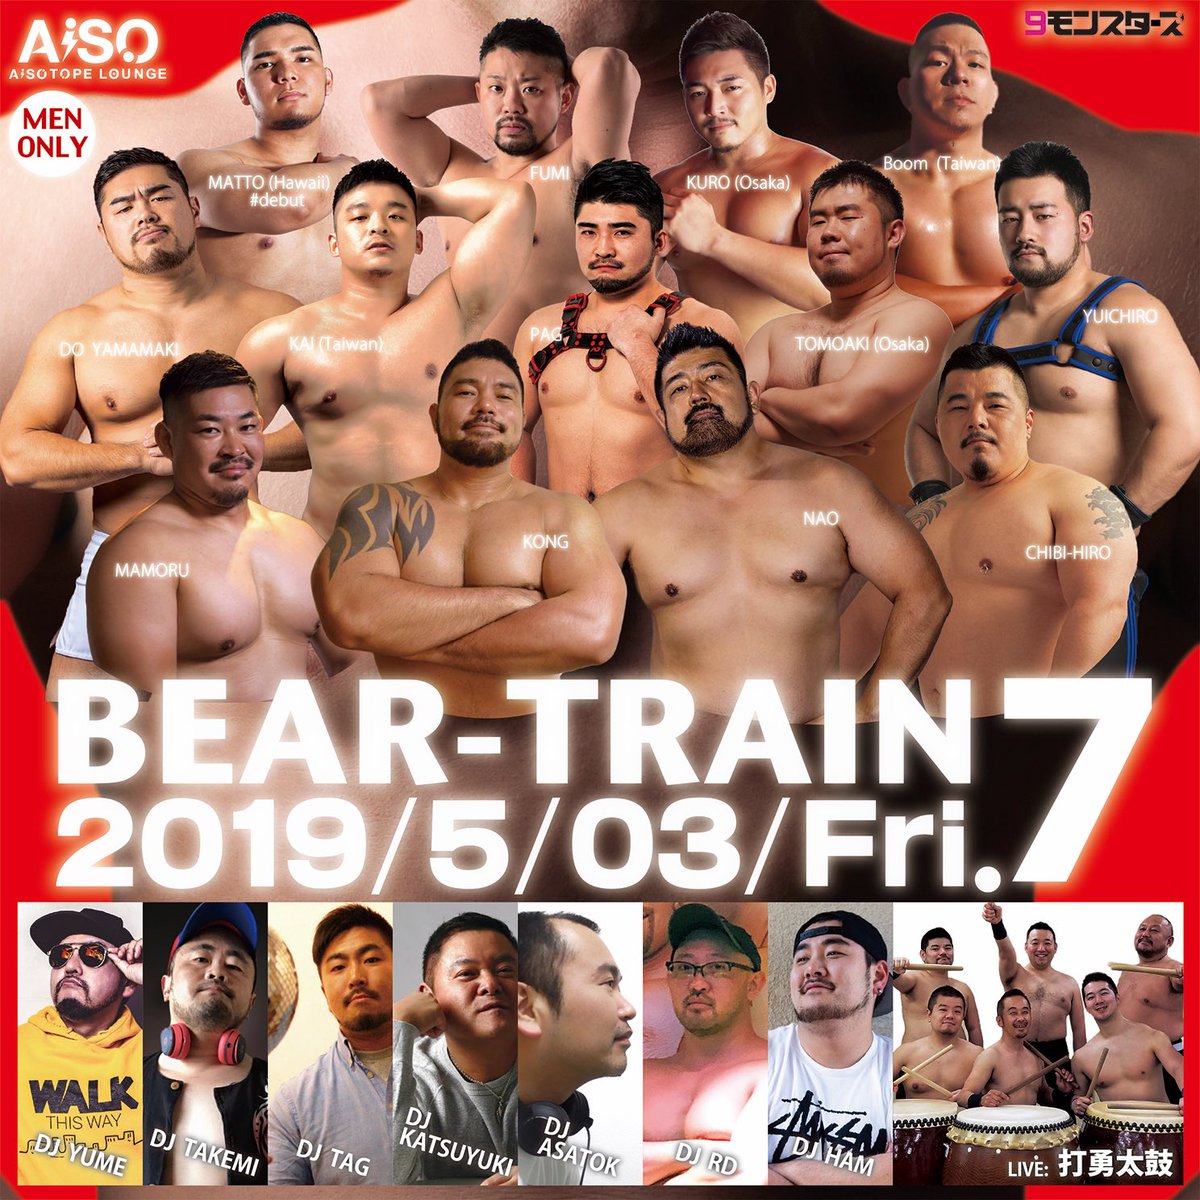 BEAR-TRAIN 7